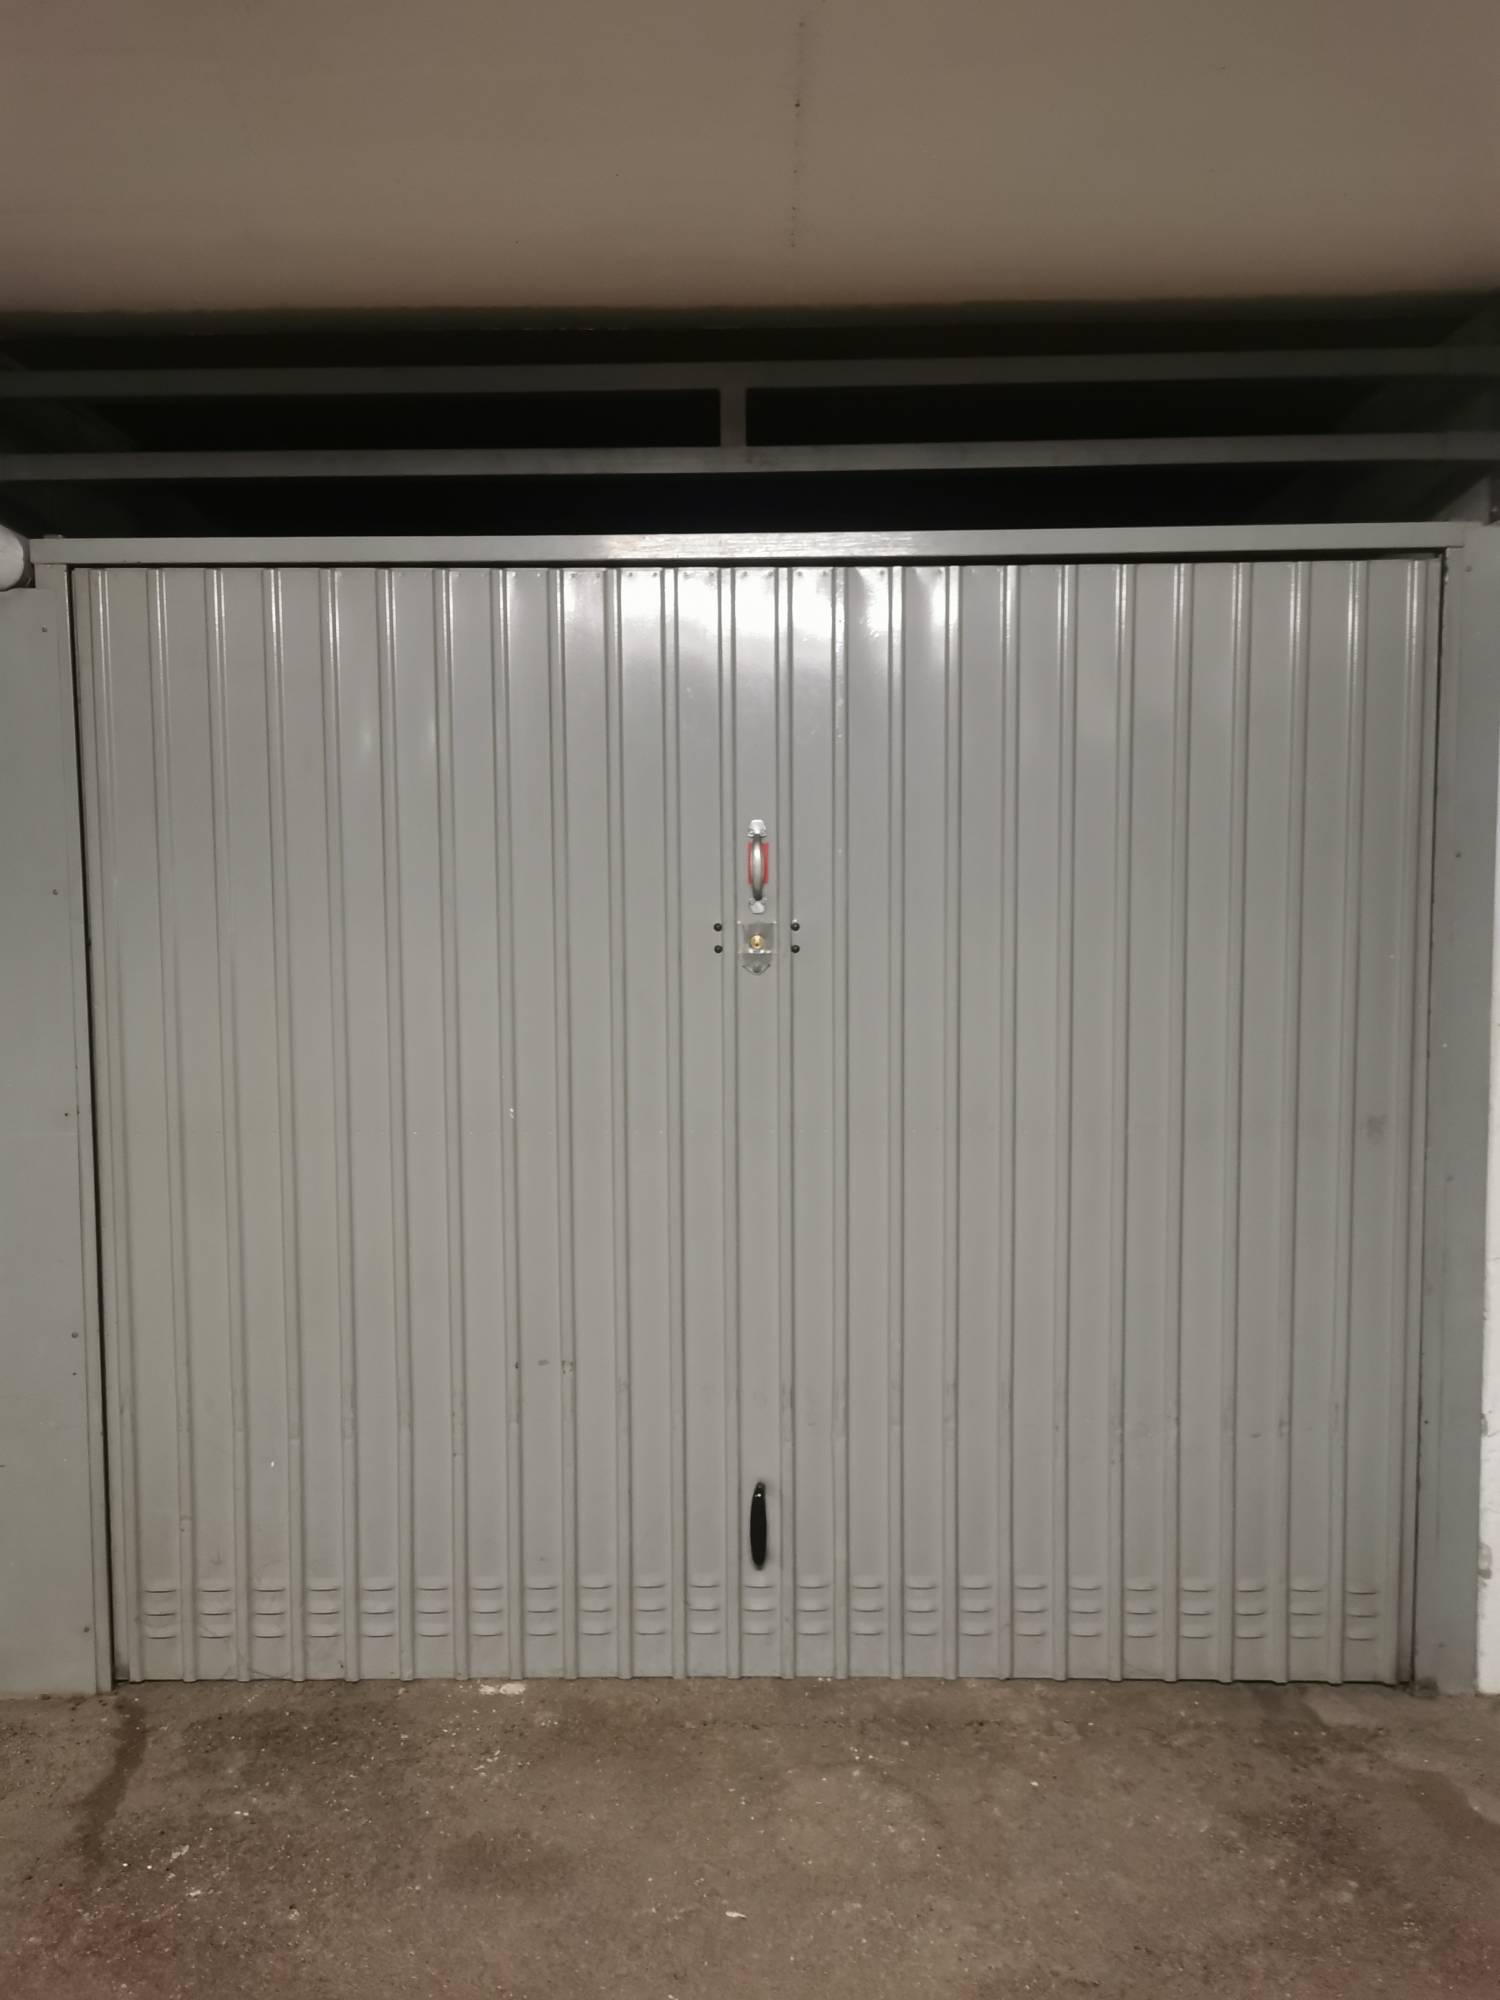 Vente garage Cassis dans résidence de standing sécurisée